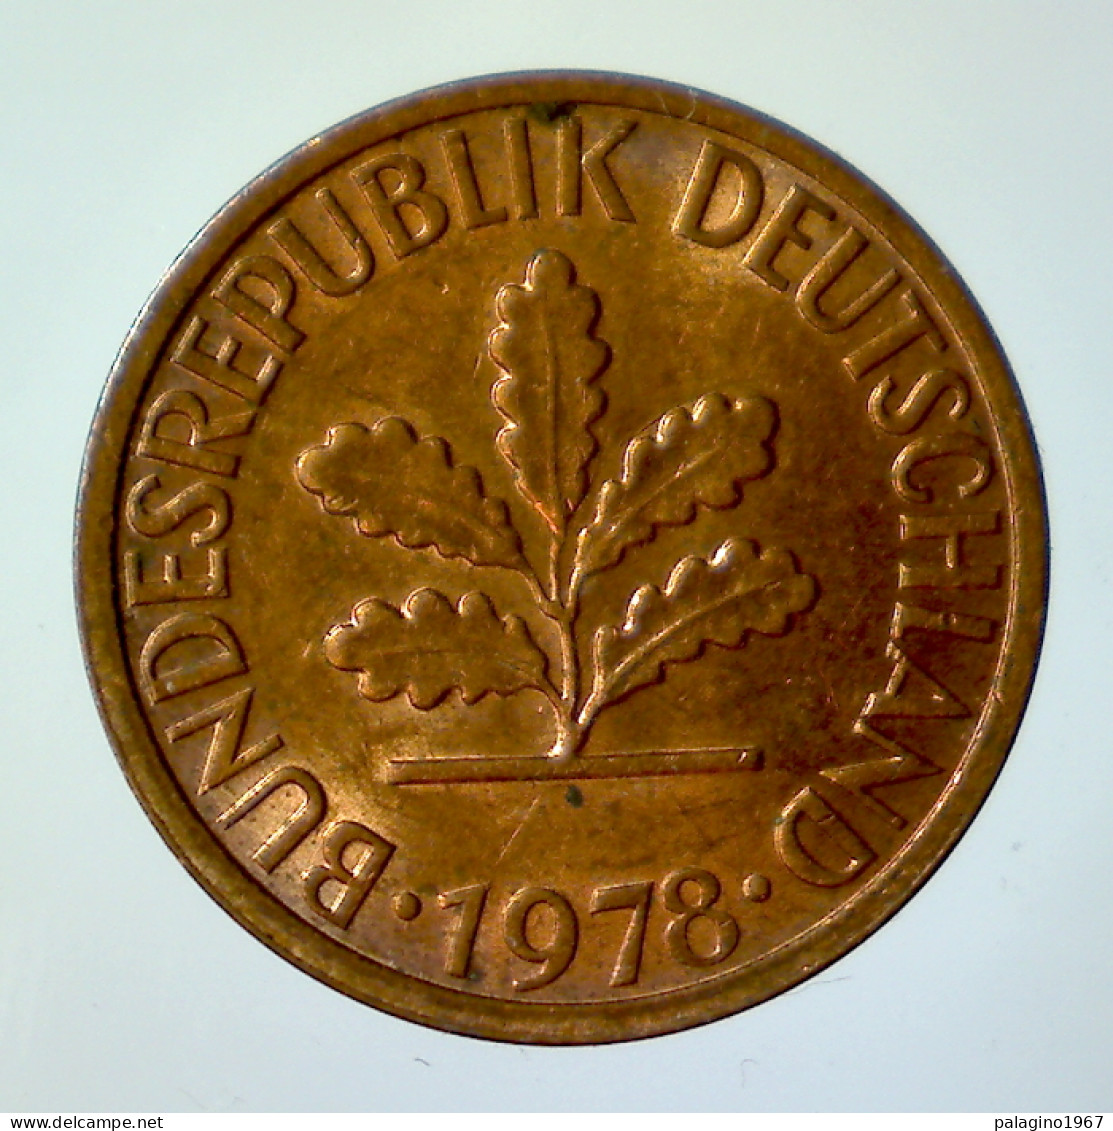 GERMANIA 1 Pfennig 1978 F QFDC  - 1 Pfennig